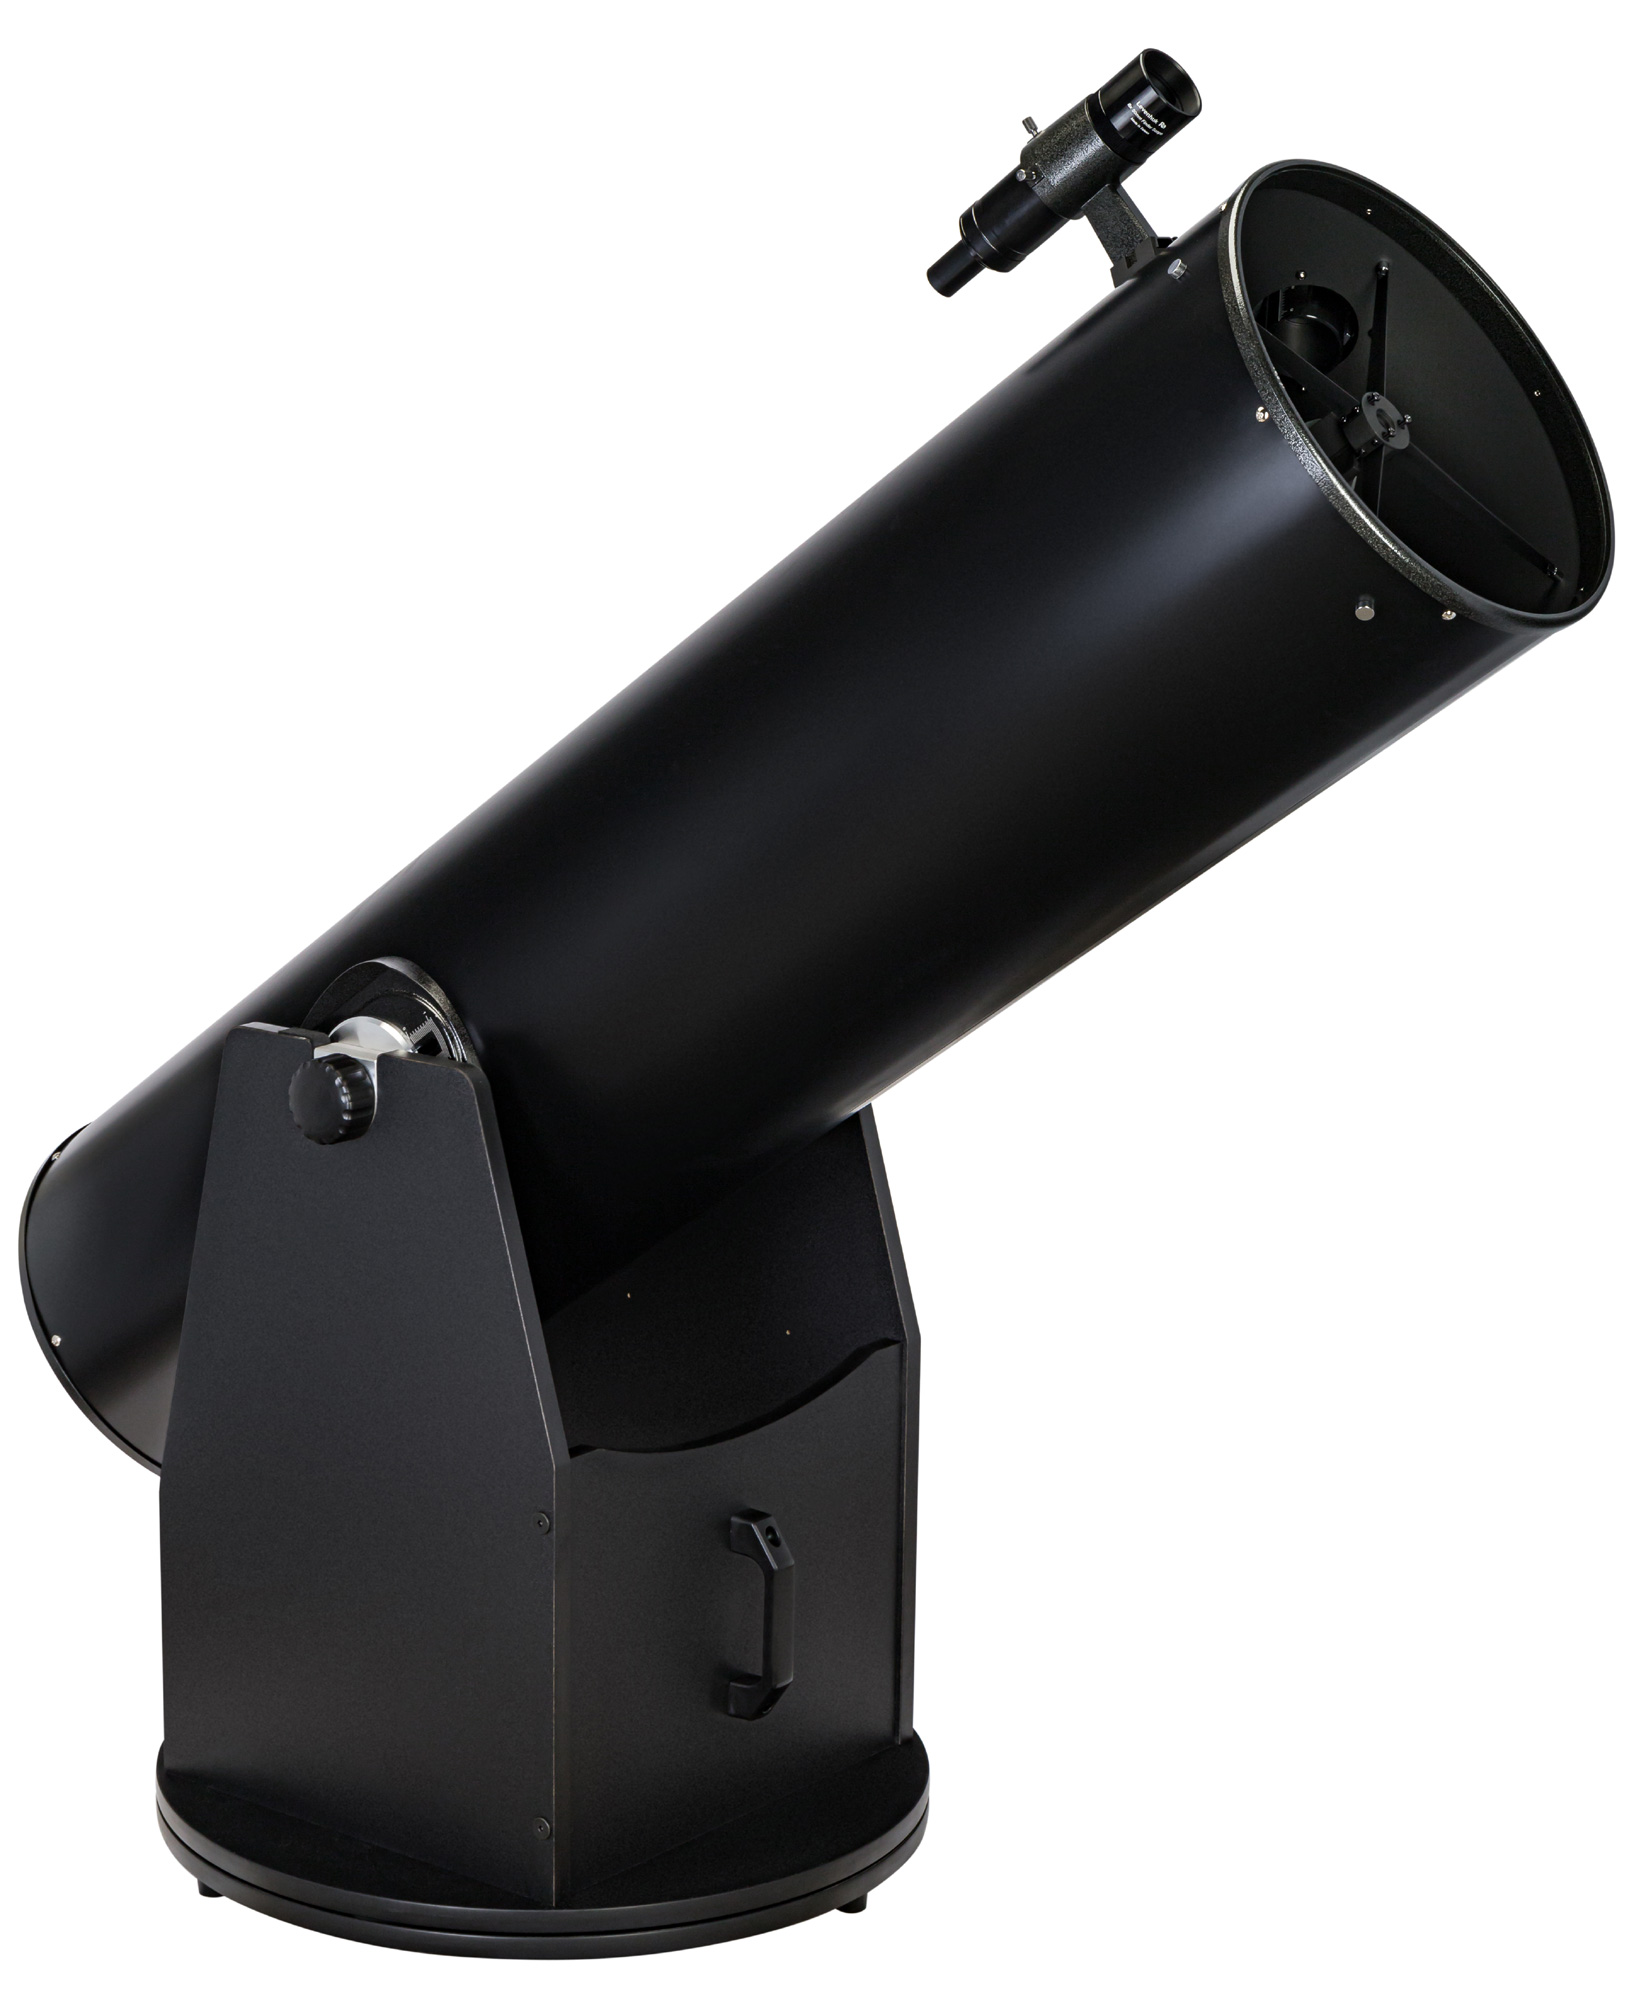 Телескоп Добсона Levenhuk Ra 300N Dob купить по оптимальной цене,  доставка по России, гарантия качества